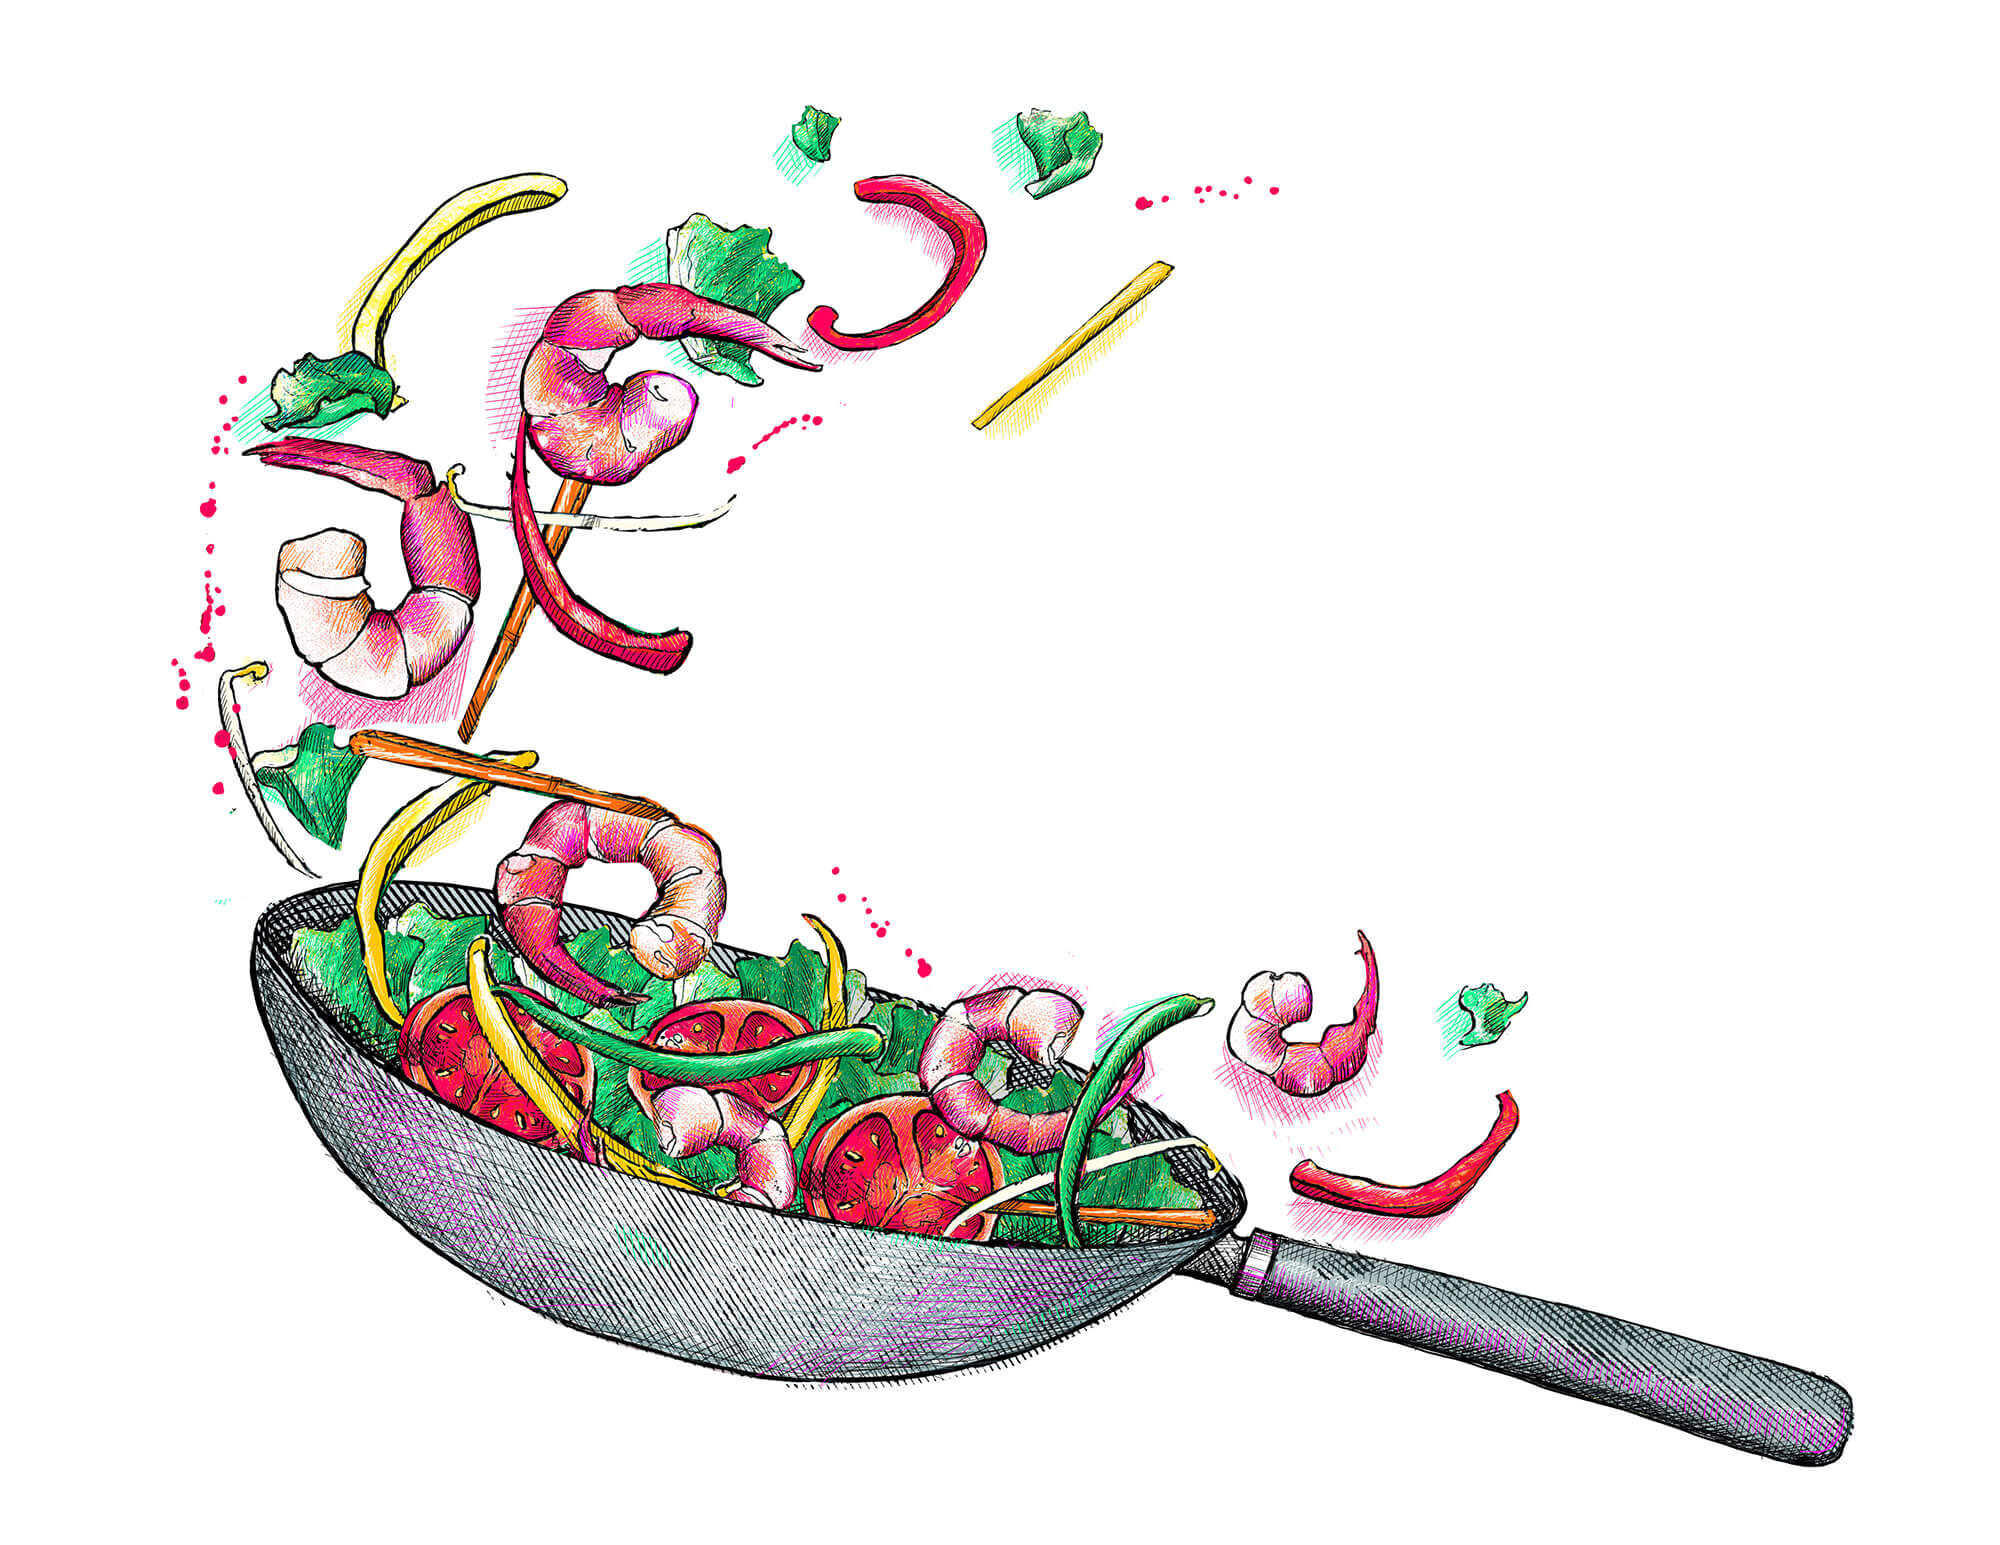 gut health-illustration-food-illustrator.jpg